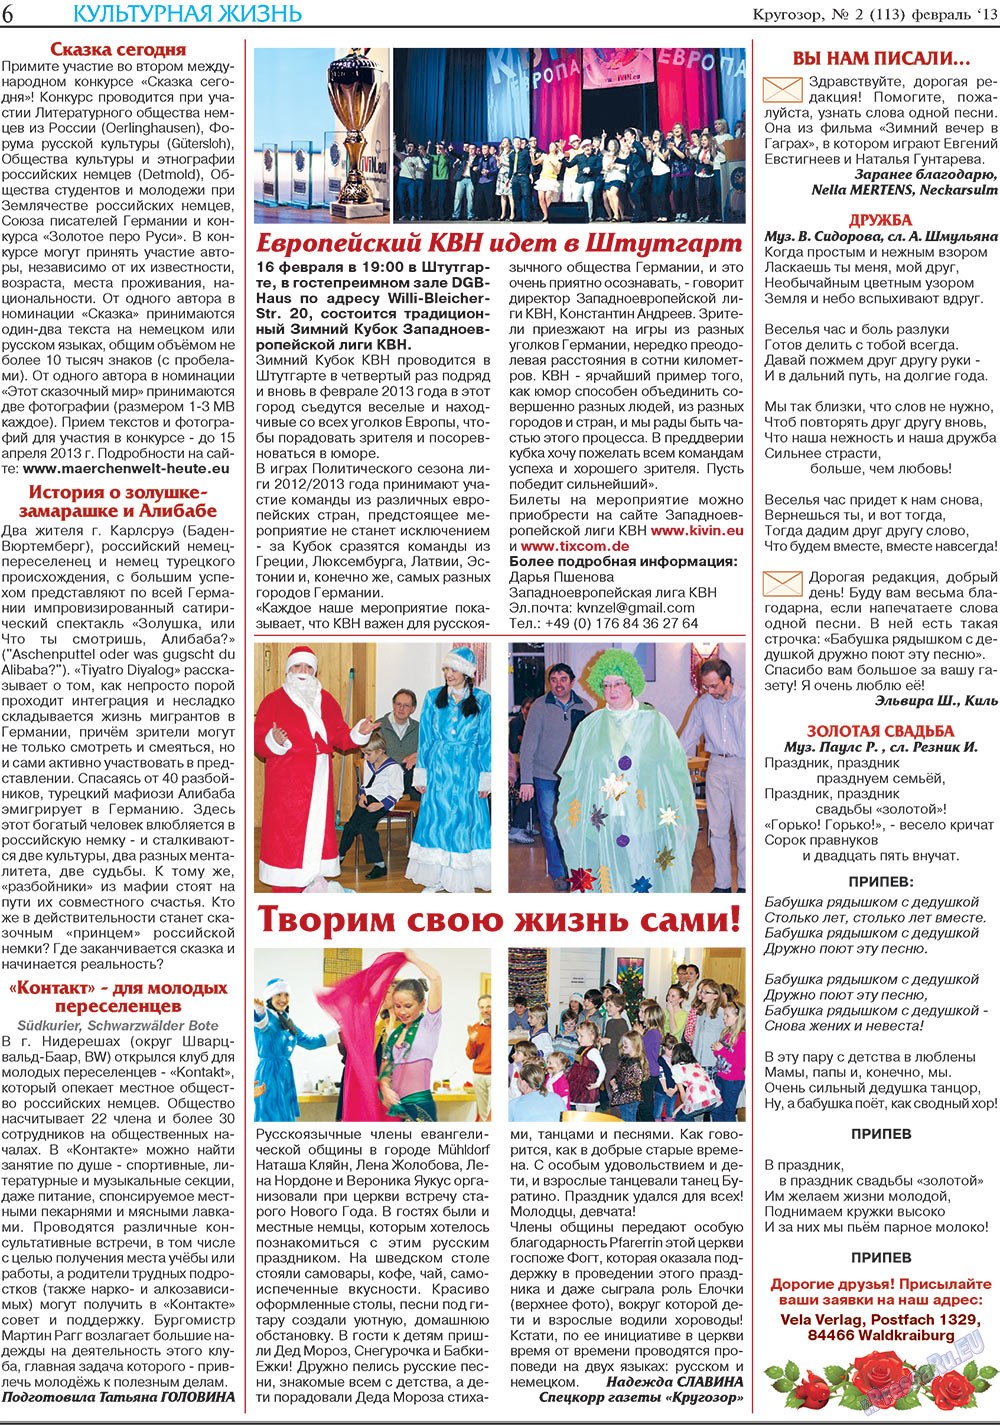 Кругозор, газета. 2013 №2 стр.6